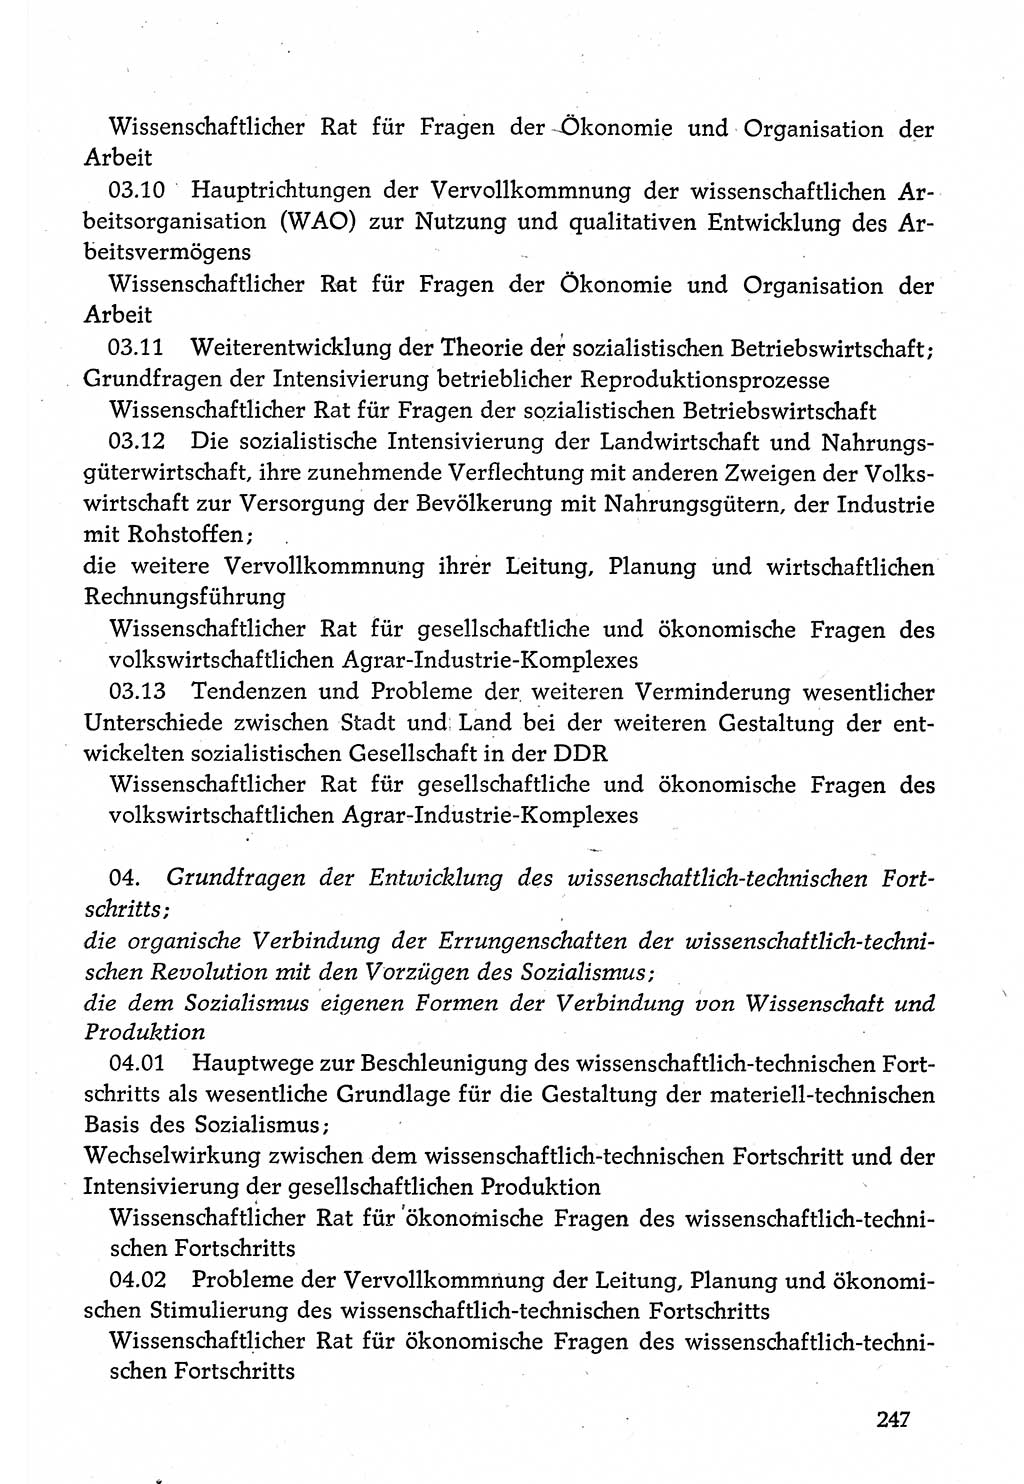 Dokumente der Sozialistischen Einheitspartei Deutschlands (SED) [Deutsche Demokratische Republik (DDR)] 1980-1981, Seite 247 (Dok. SED DDR 1980-1981, S. 247)